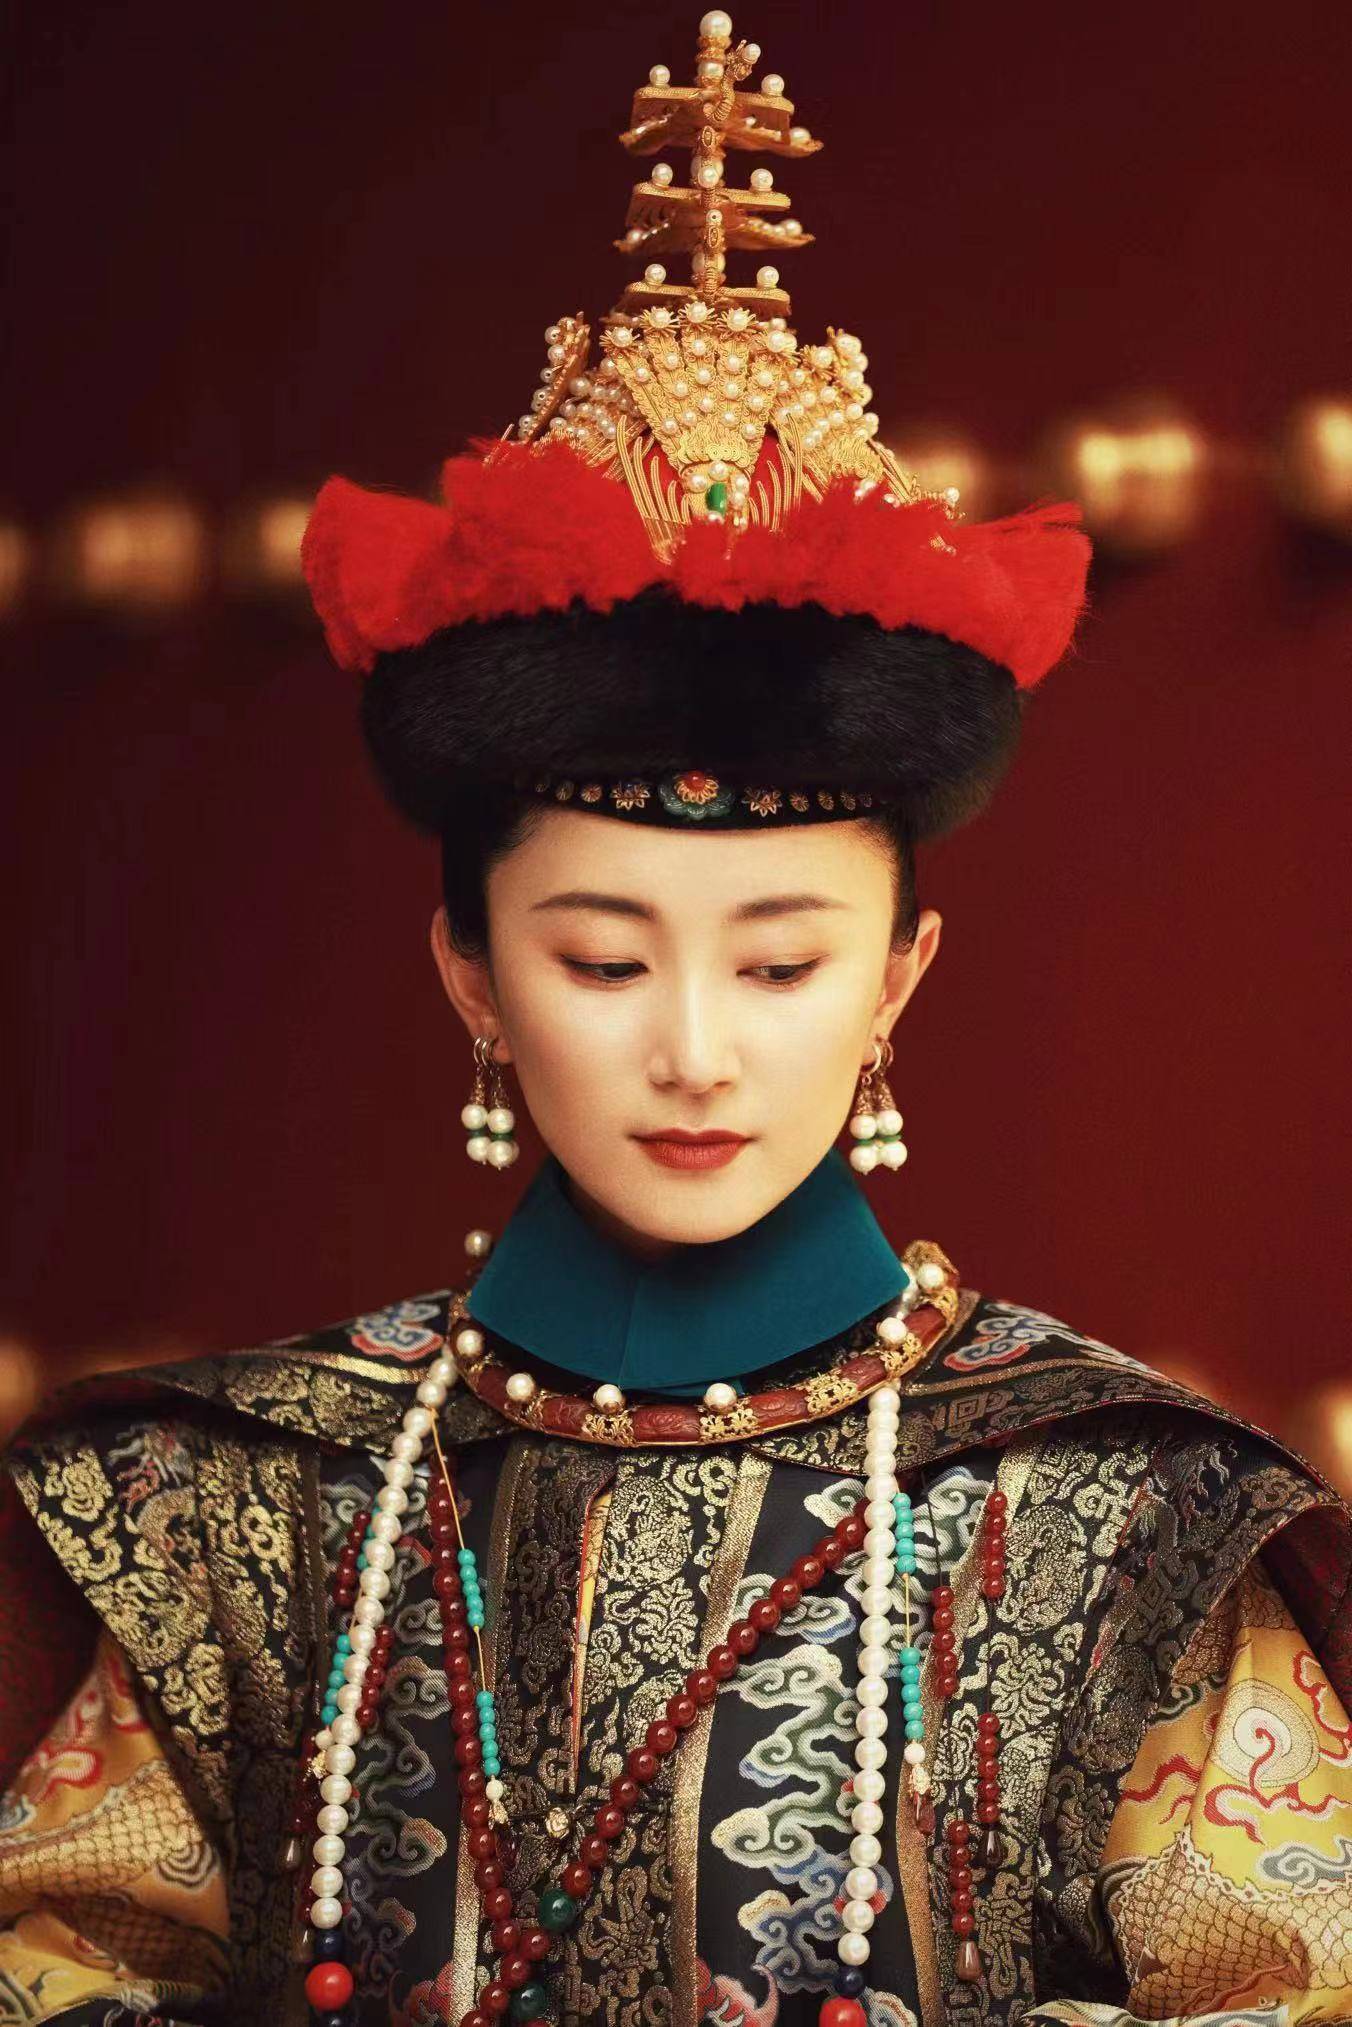 赵秦在电视剧《甄嬛传》中饰演的富察贵人形象深入人心,她在剧中的